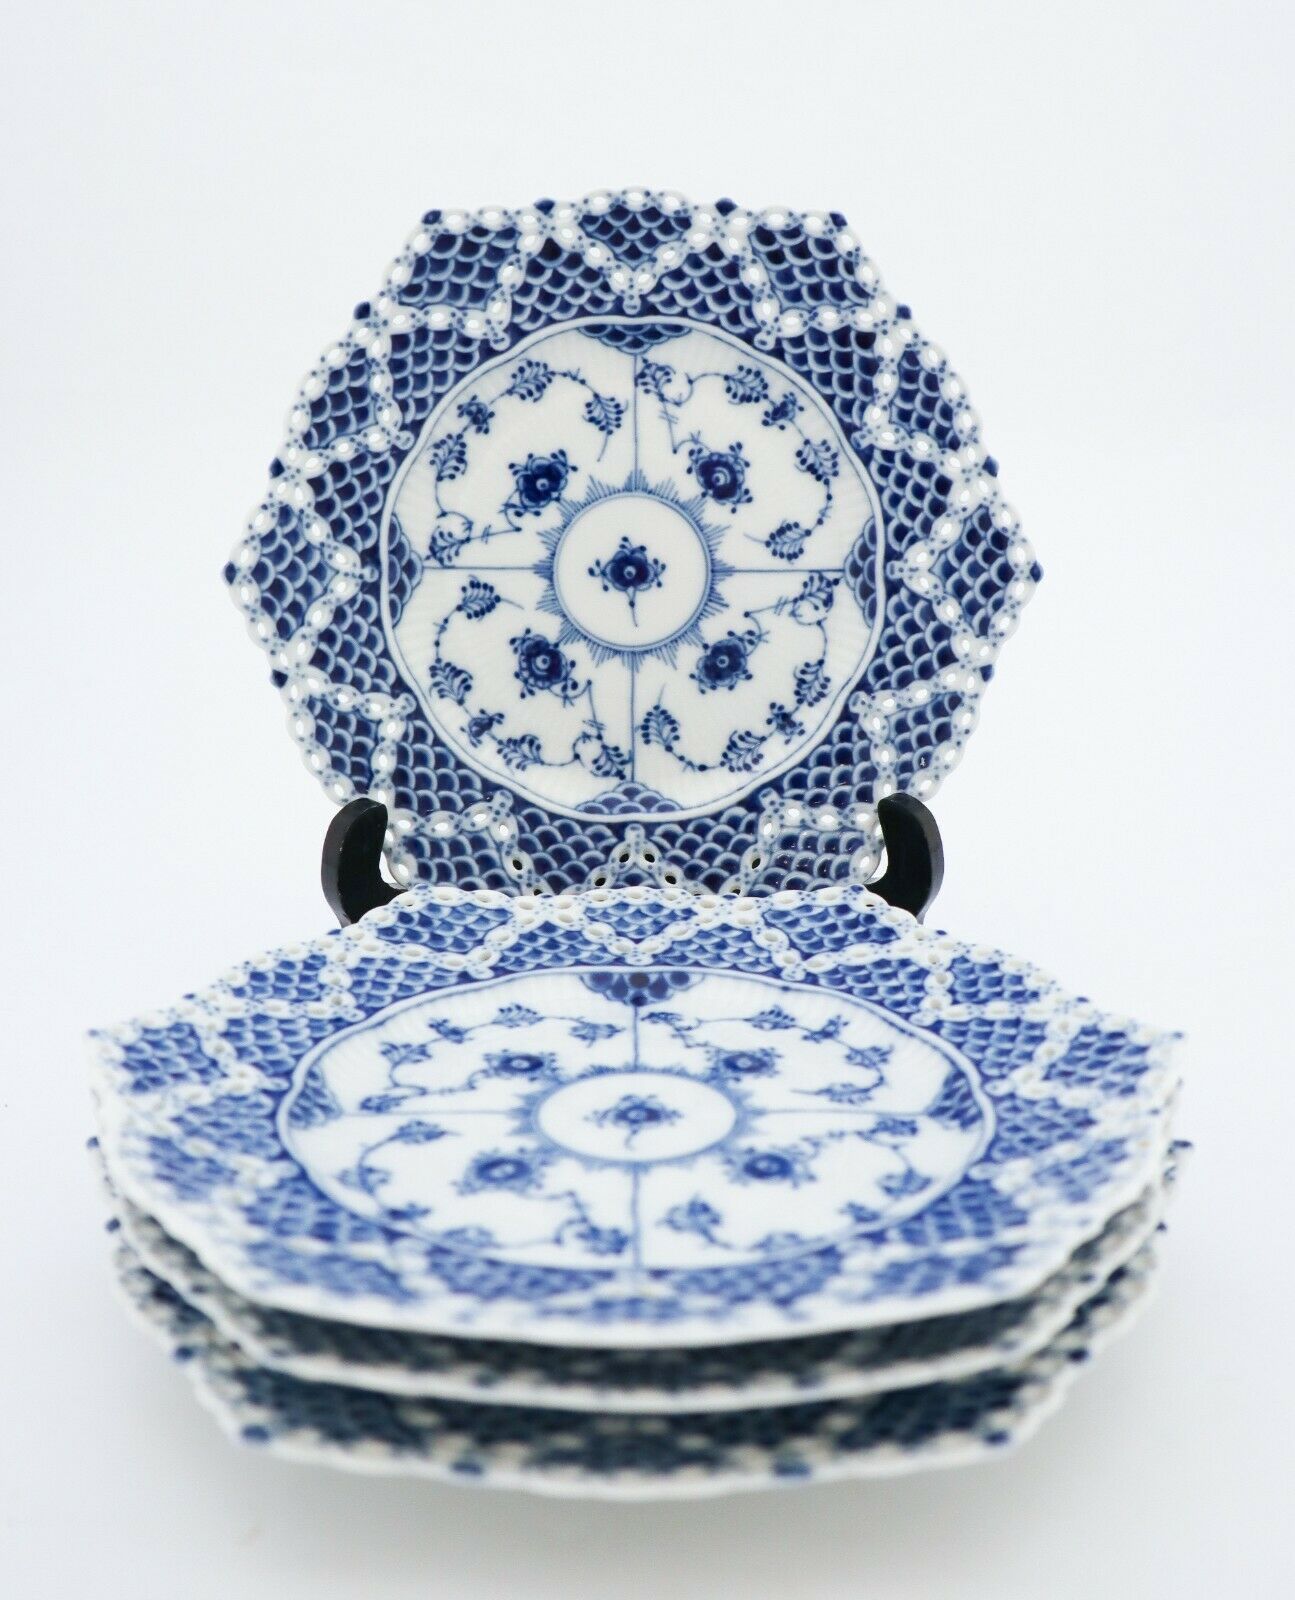 4 Plates #1094 - Blue Fluted - Royal Copenhagen Double Lace - 1st Quality